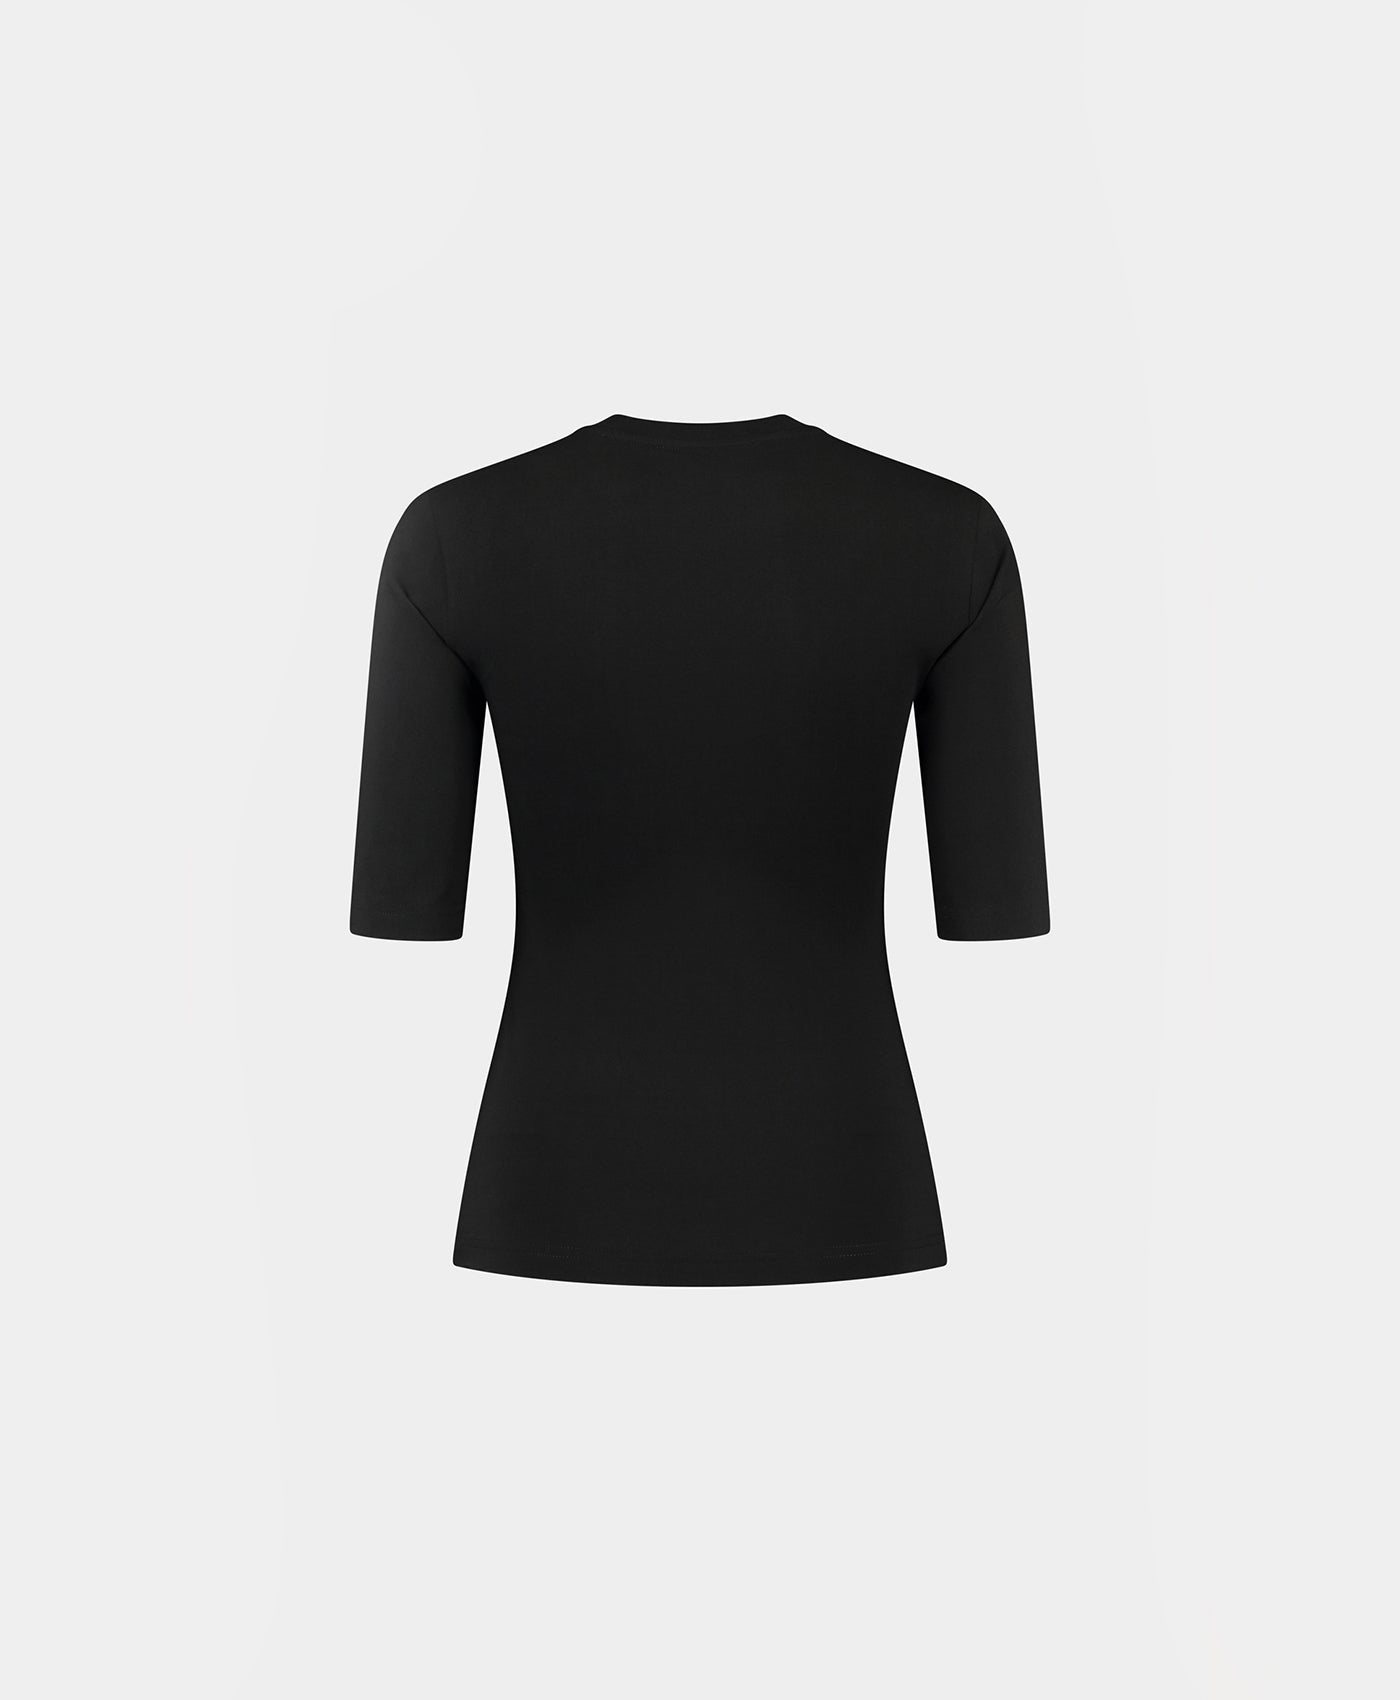 DP - Black Ehalf T-Shirt - Packshot - Rear